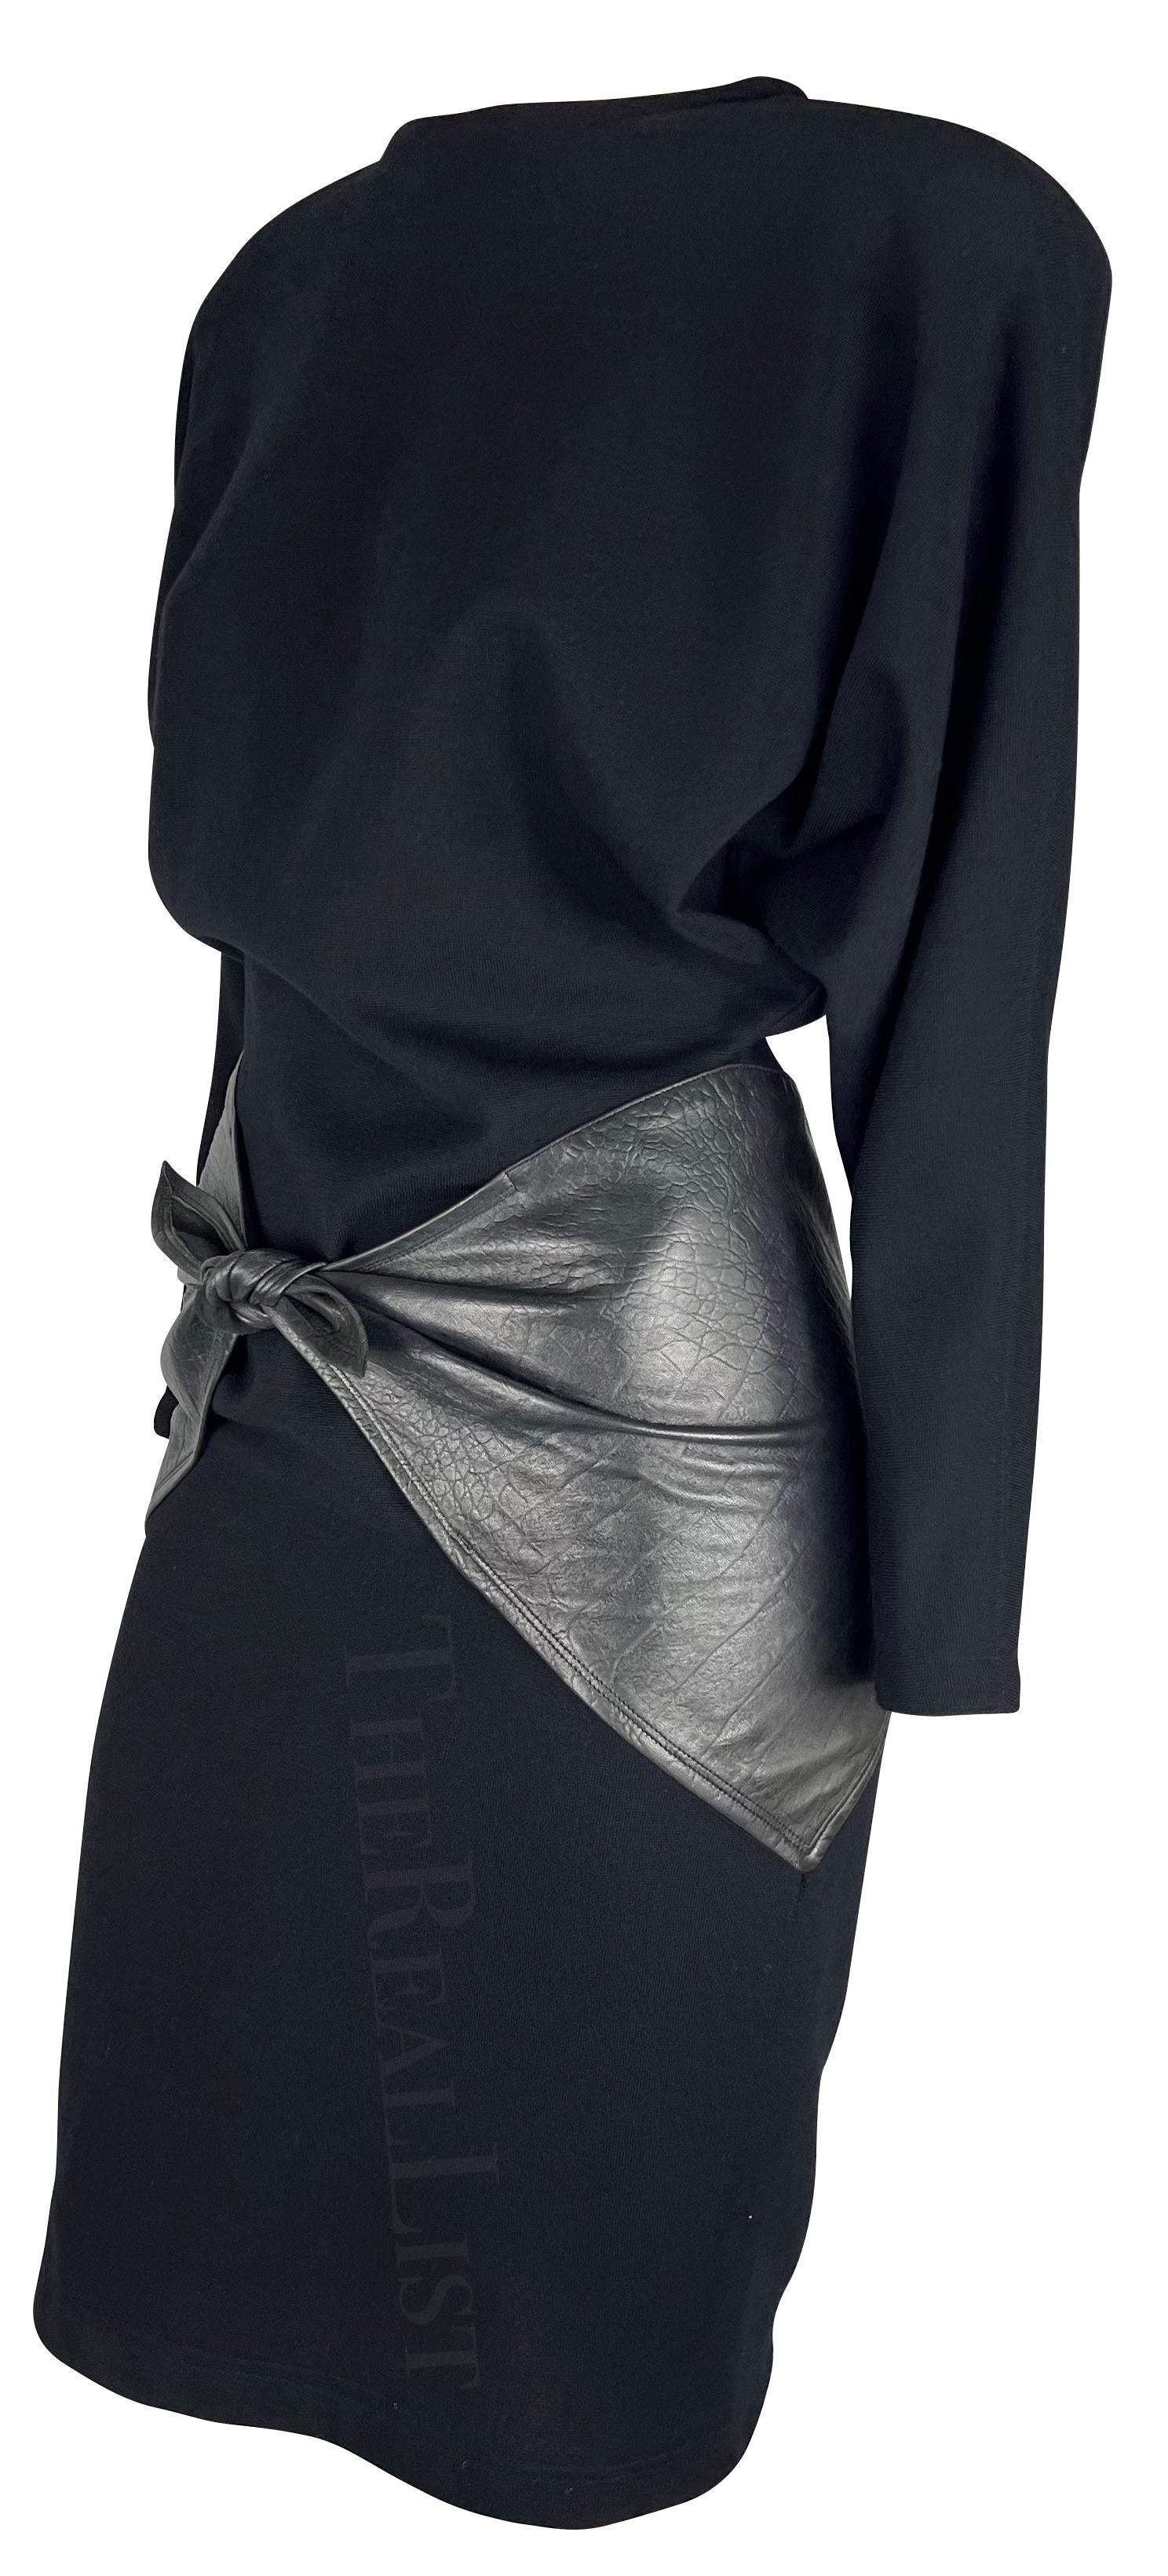 Présentation d'une robe Gianni Versace en maille noire et cuir, dessinée par Gianni Versace. Datant des années 1980 glamour, cette robe exquise à manches longues adopte l'esthétique caractéristique de l'époque avec des épaulettes intégrées et un